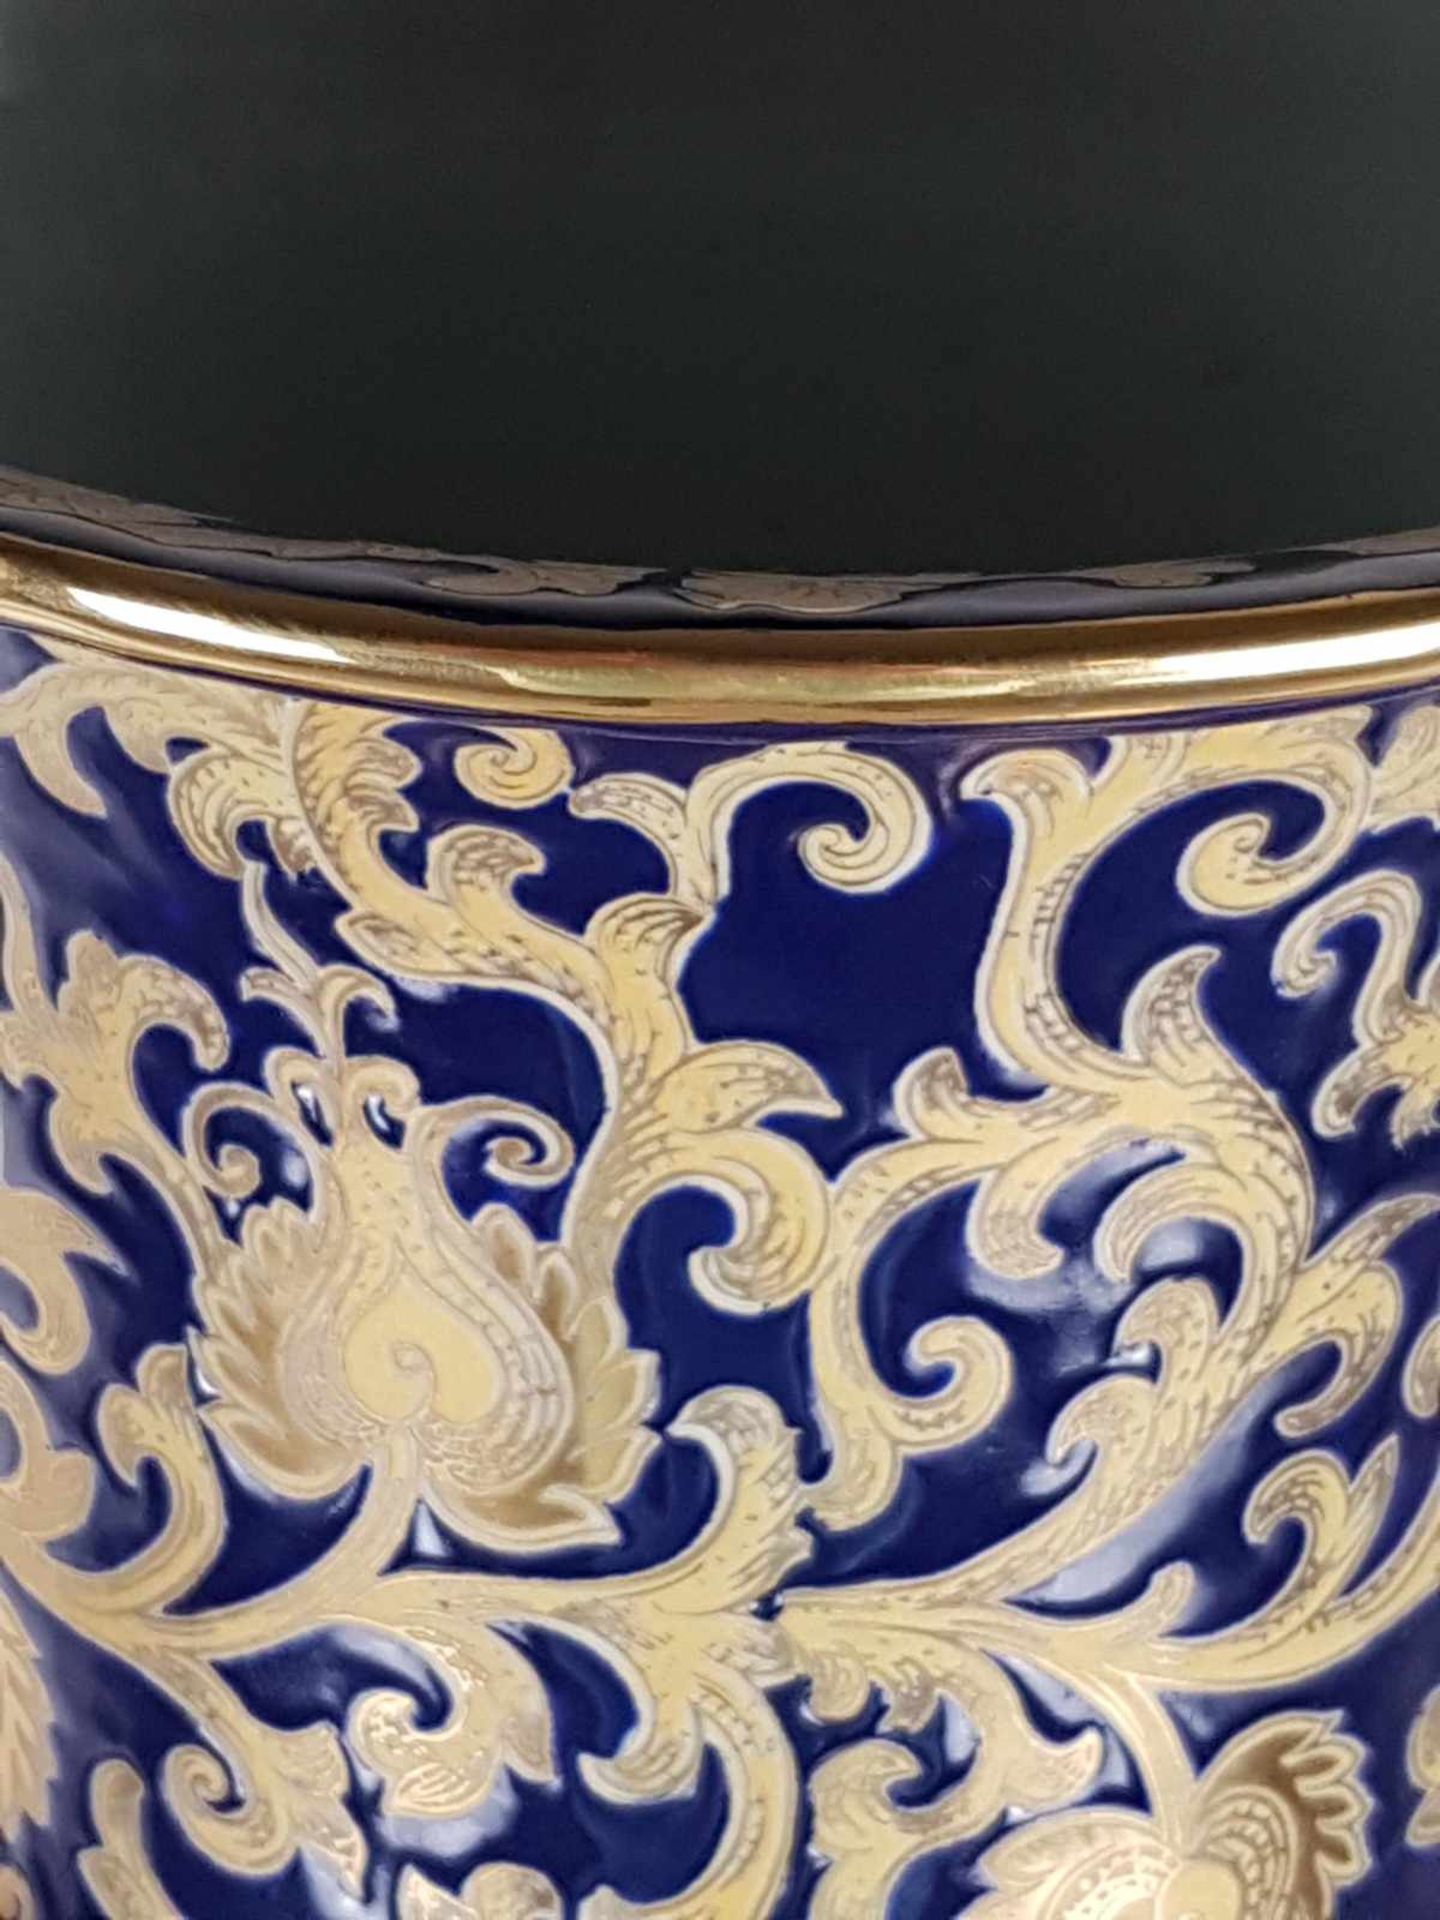 Chinesische Bodenvase - nicht gemarkt, Kobaltblau/Gold staffiert, florales Muster, 2 Henkel - Bild 3 aus 4